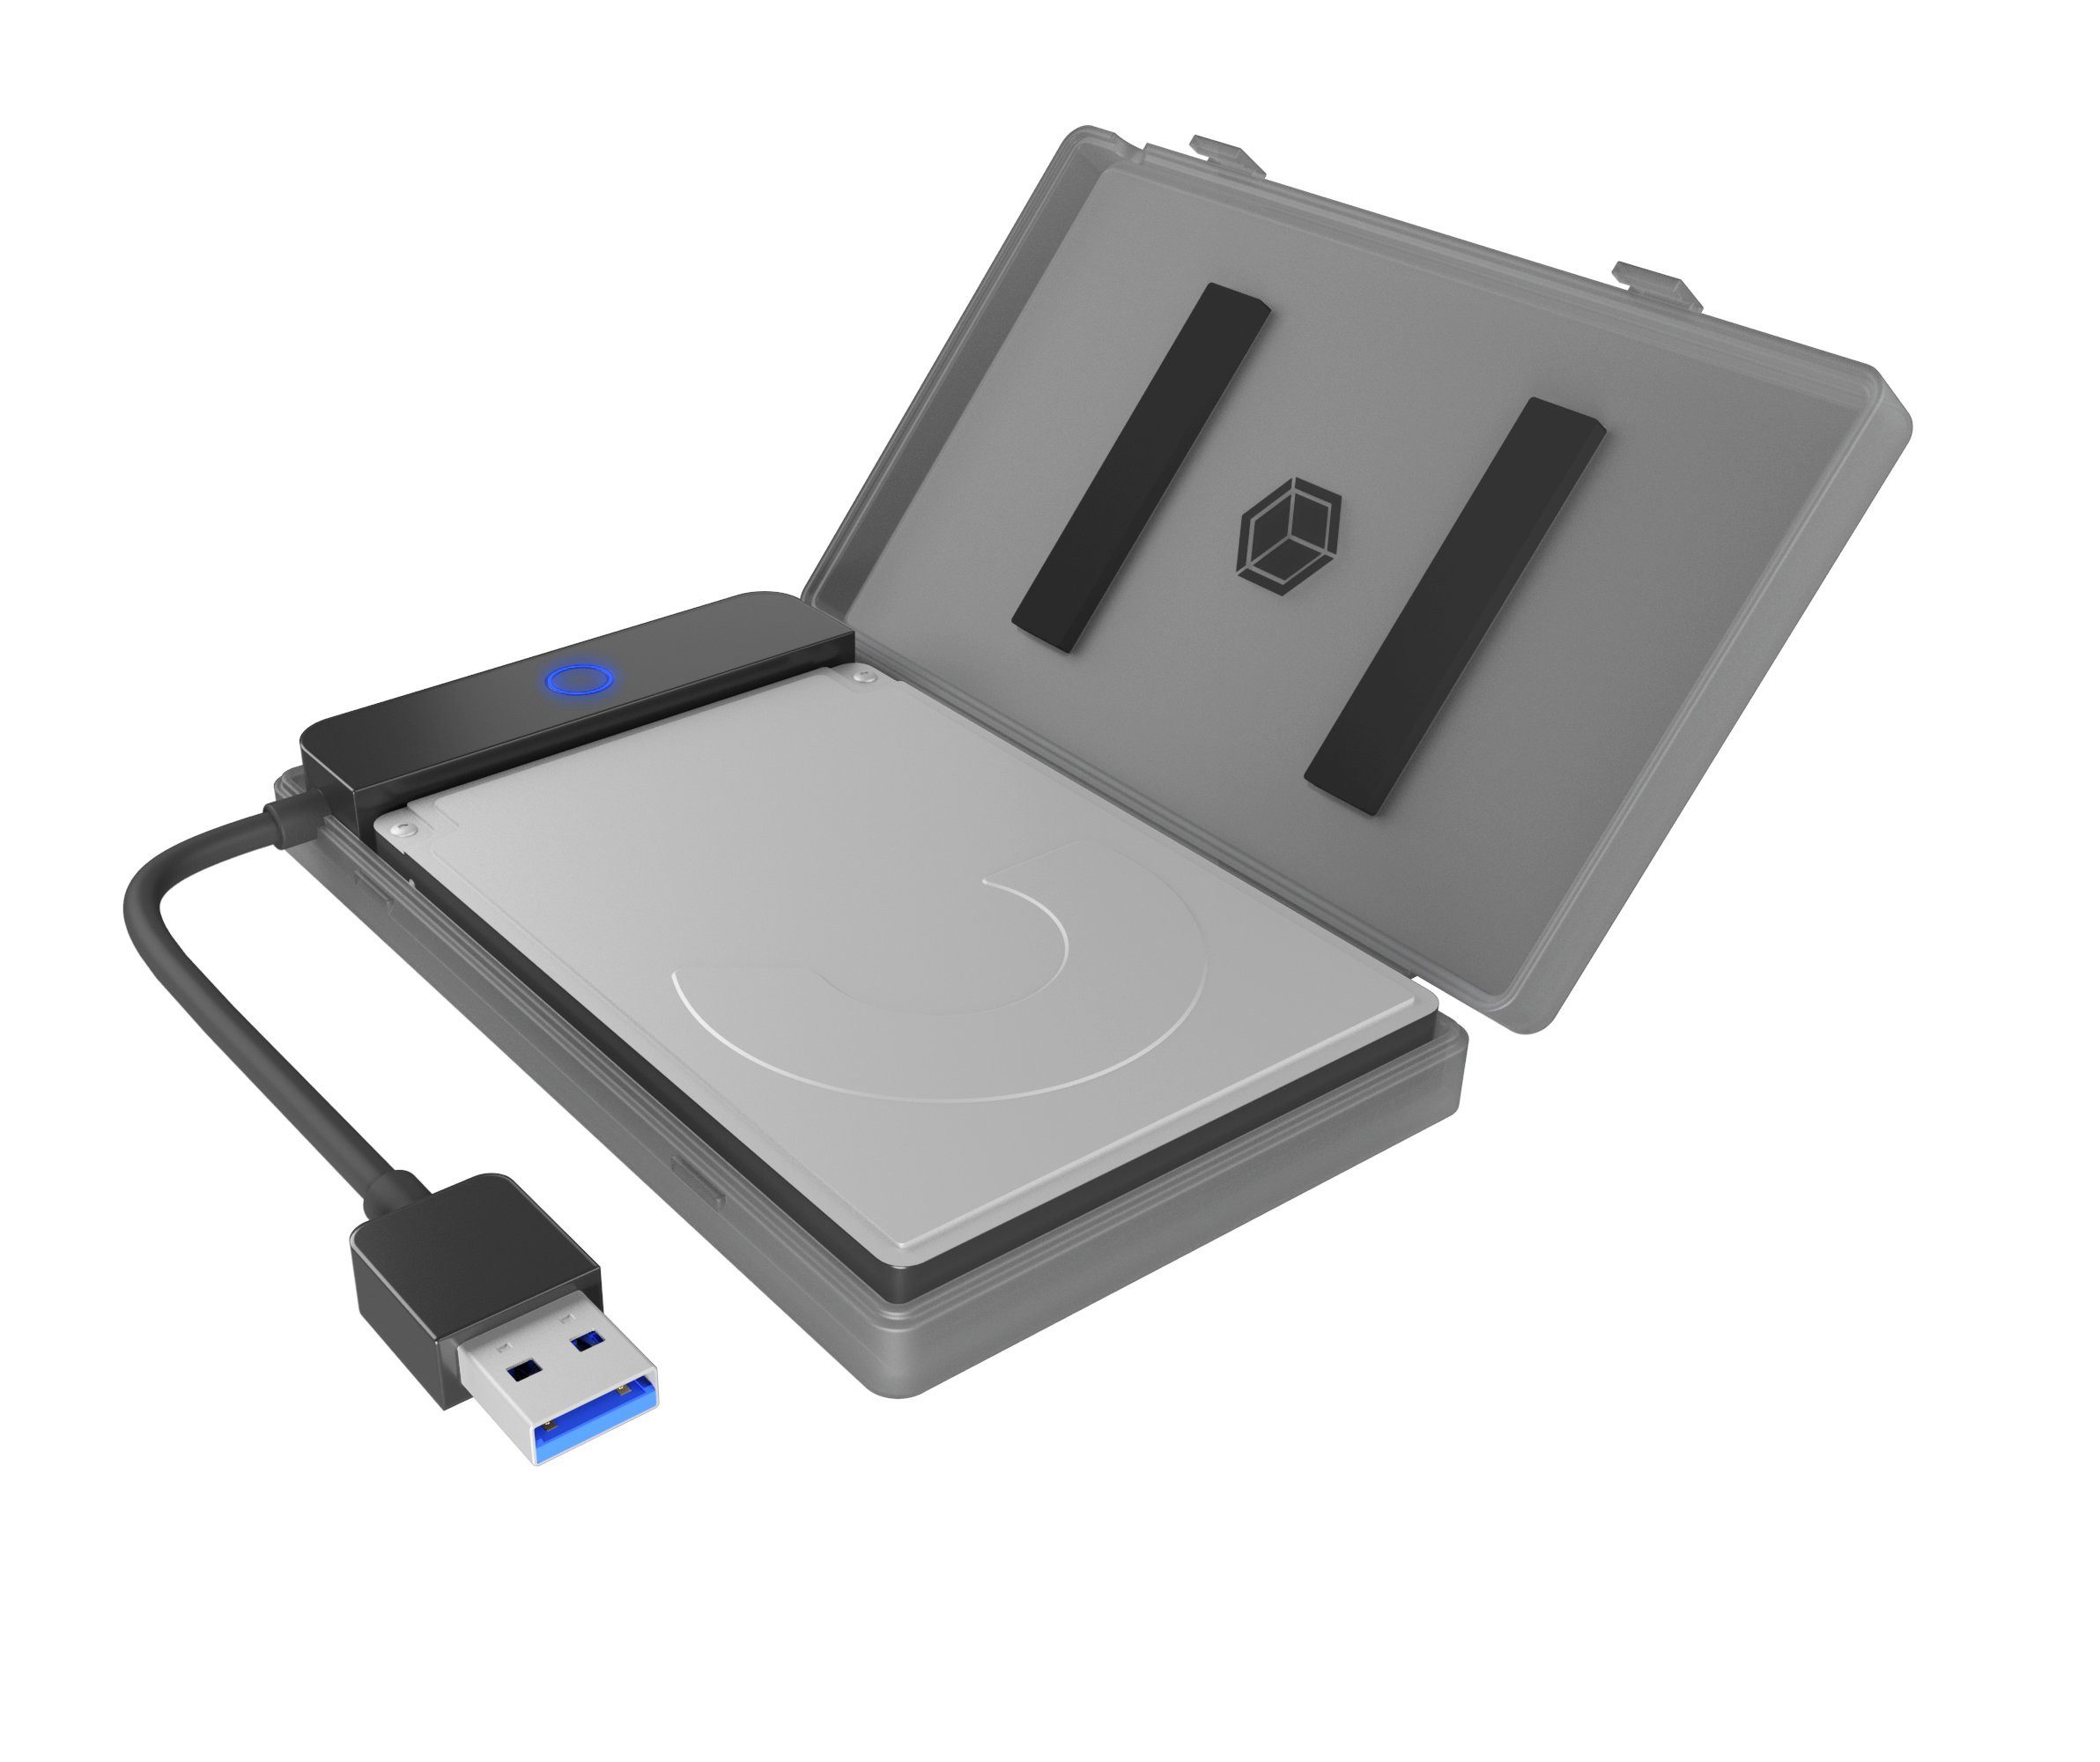 Festplatten-Gehäuse ext. 2.5 SATA Gehäuse, USB 3.2 Gen 1, Werkzeuglos, Kunststoff, schwarz